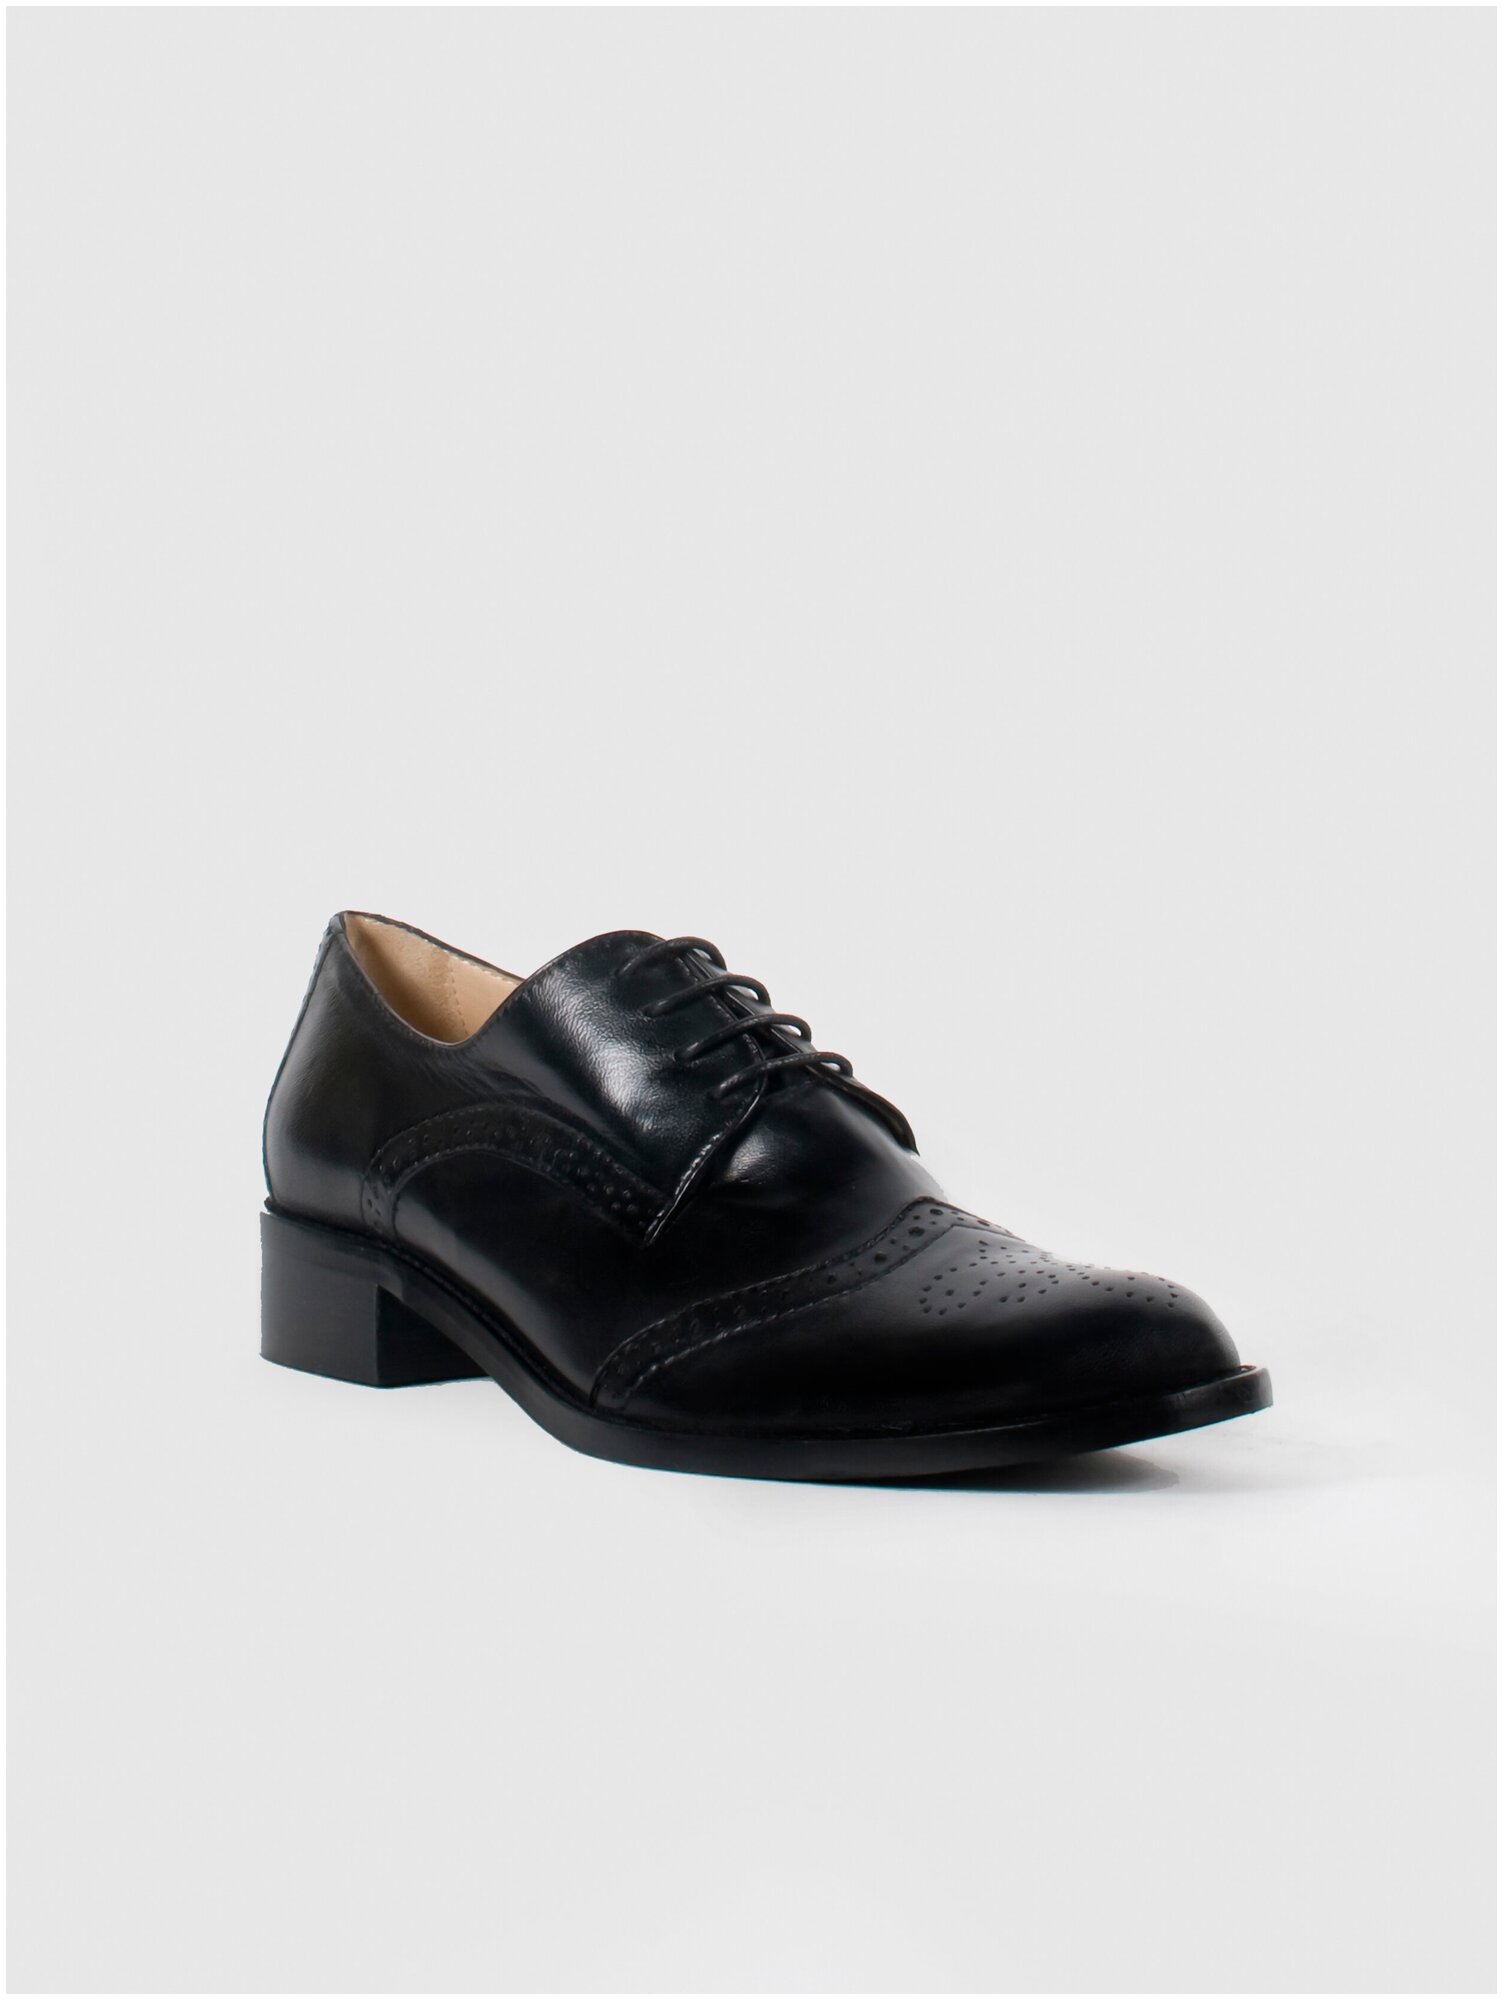 Женская обувь G. Benatti туфли модель 